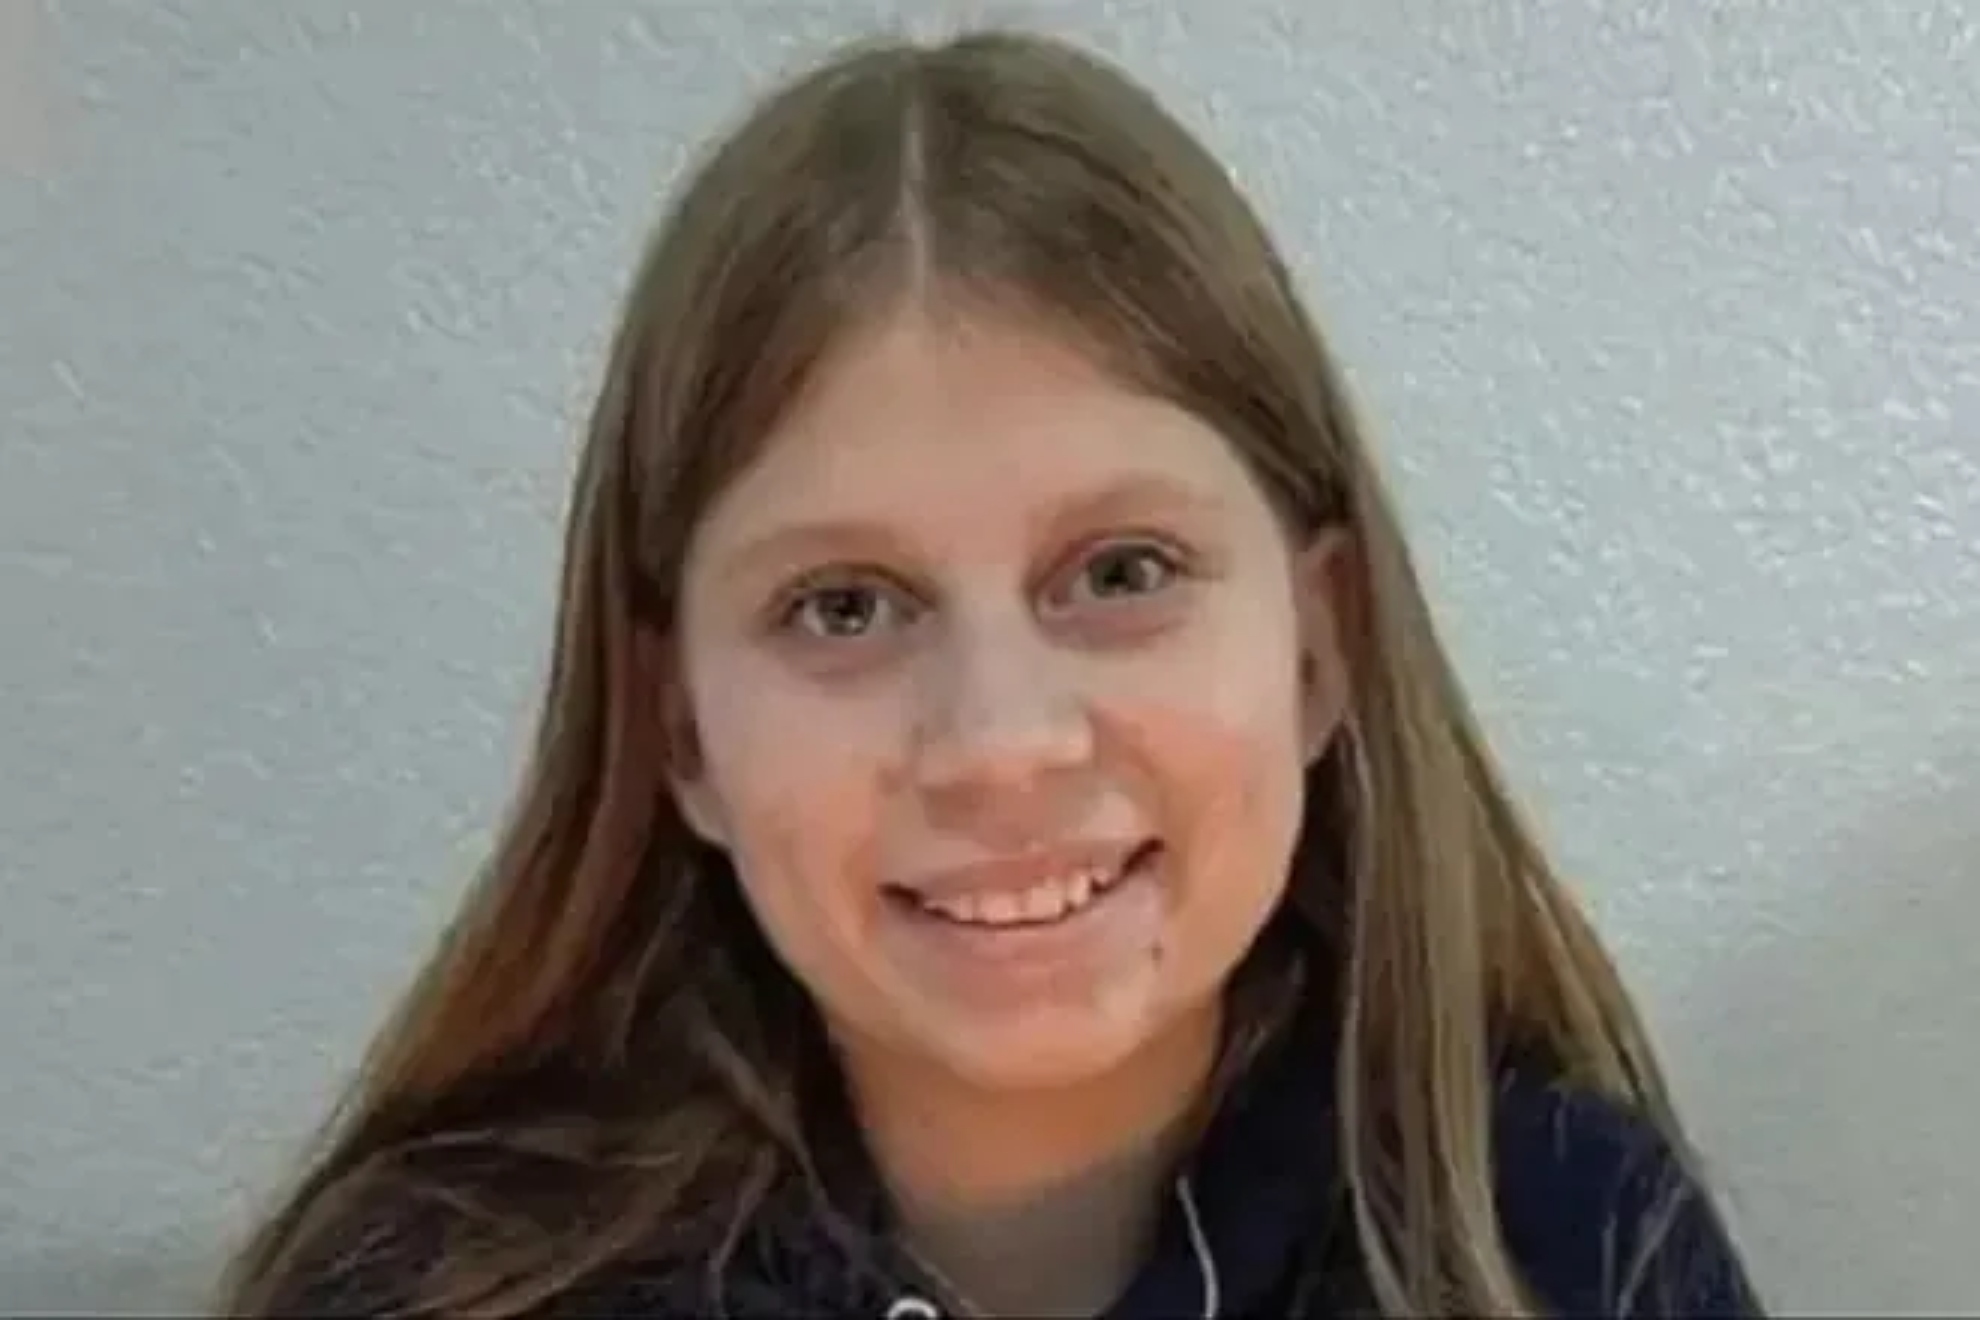 Madeline Soto, la niña desaparecida de Florida, fue encontrada muerta y hay un sospechoso en custodia